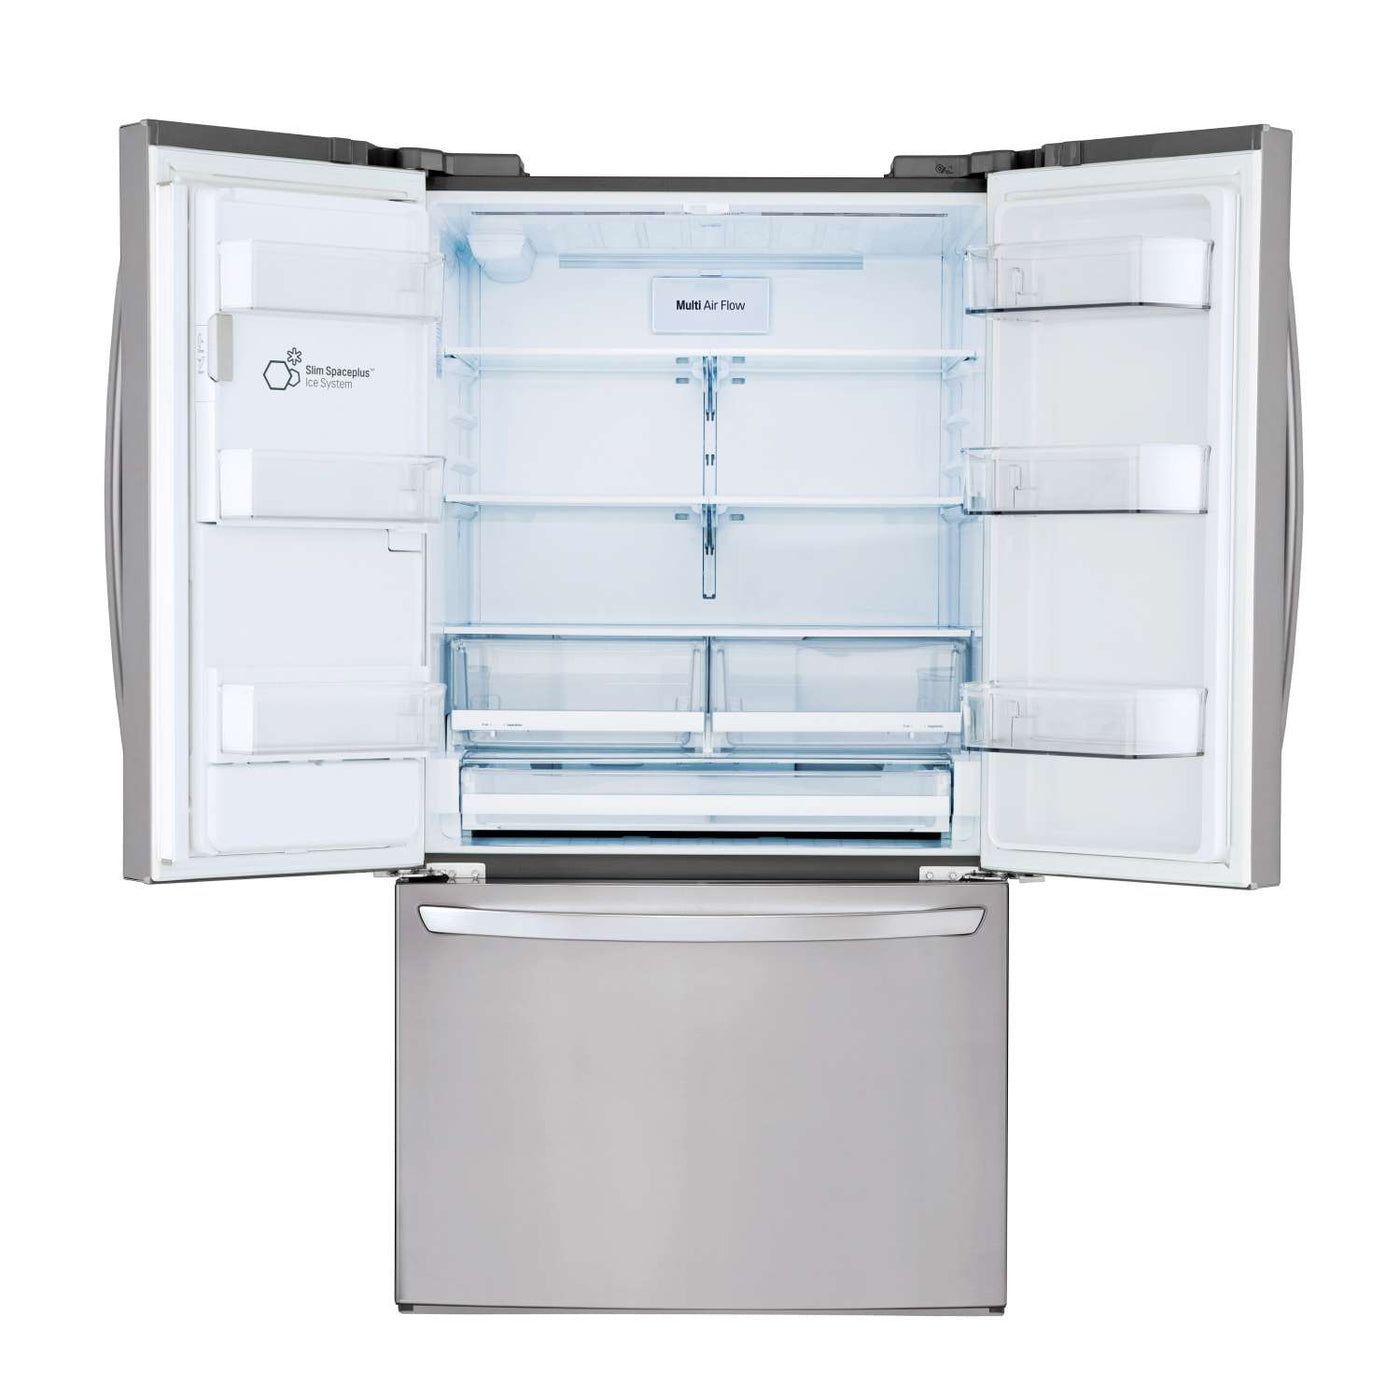 Réfrigérateur - LG Distributeur d'eau